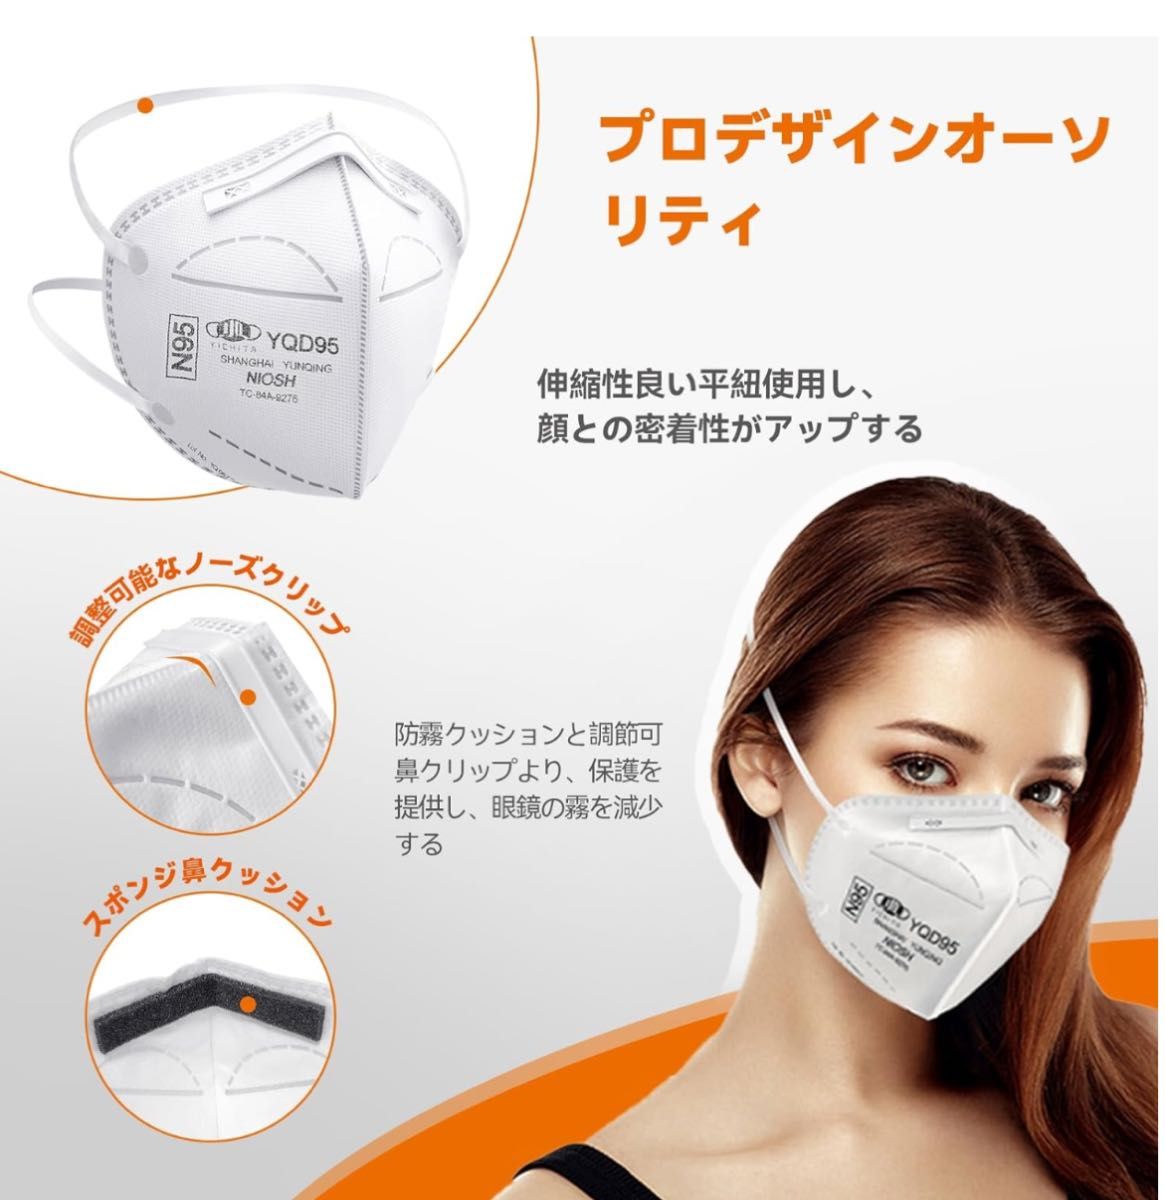 医療用N95マスク 個包装 折畳式 頭掛け式  360度3D設計